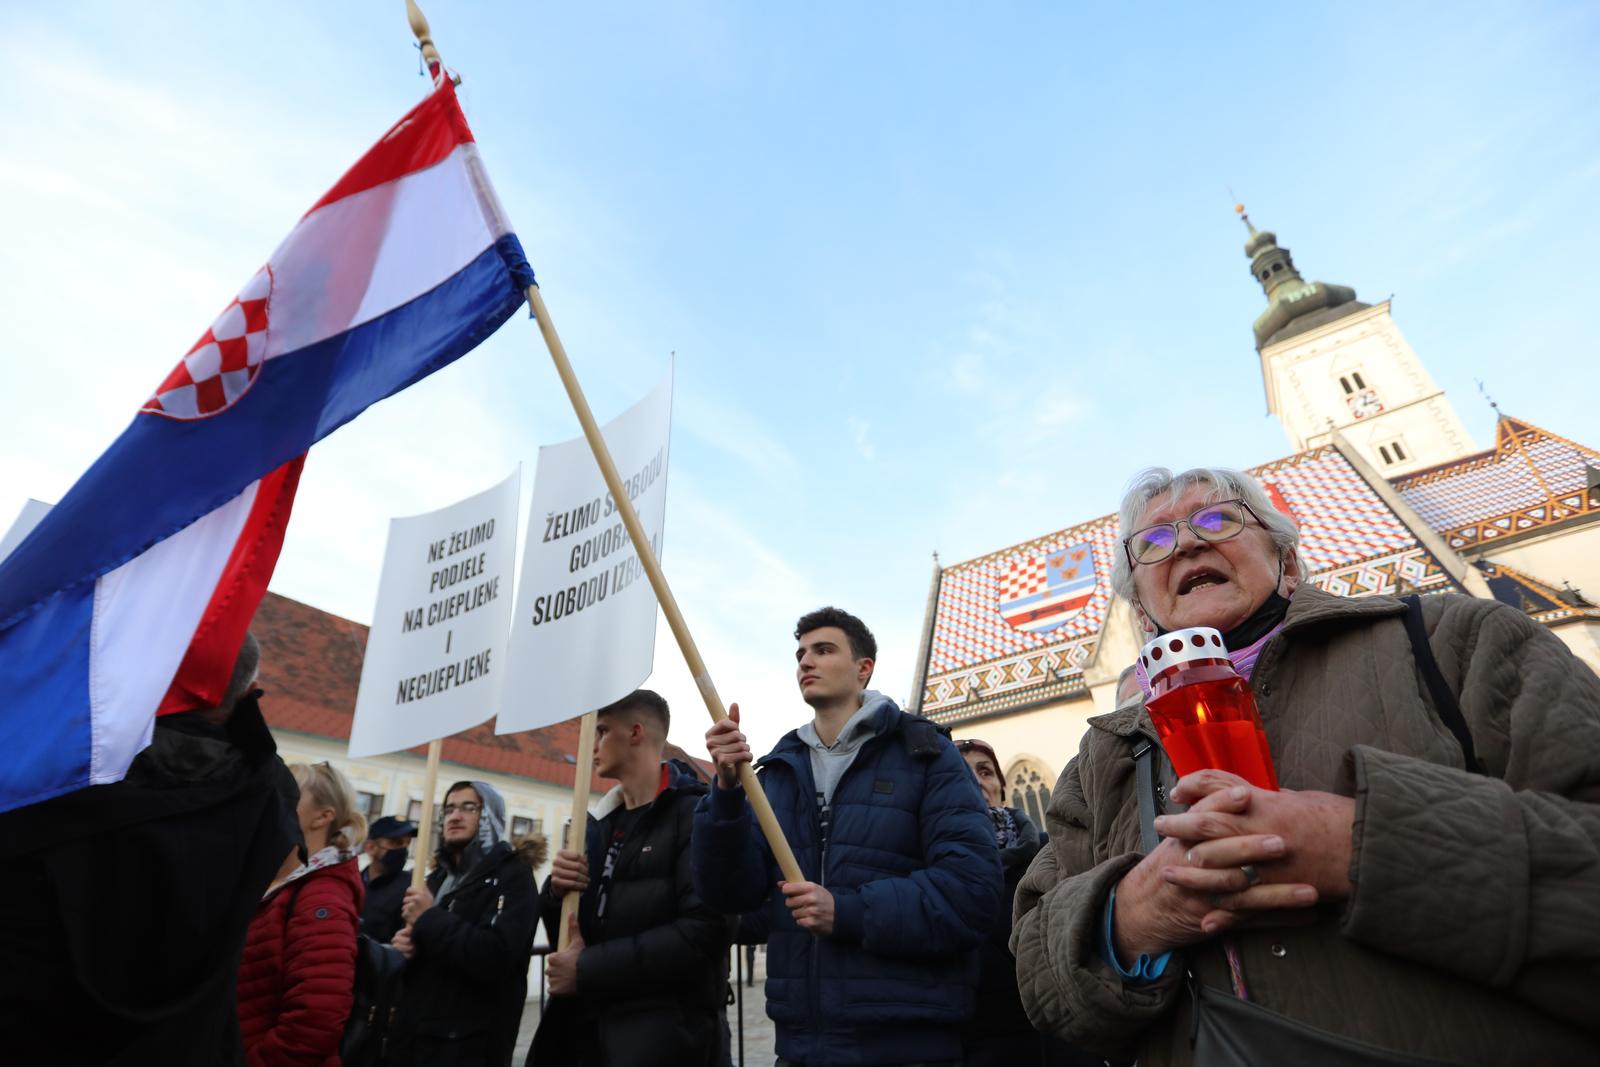 13.11.2021. Zagreb - Udruga Vigilare organizira je prosvjed za ukidanje COVID potvrda na cijelom terirtoriju RH i izglasavanje zakona kojim se zabranjuje ponovno uvodjenje istih